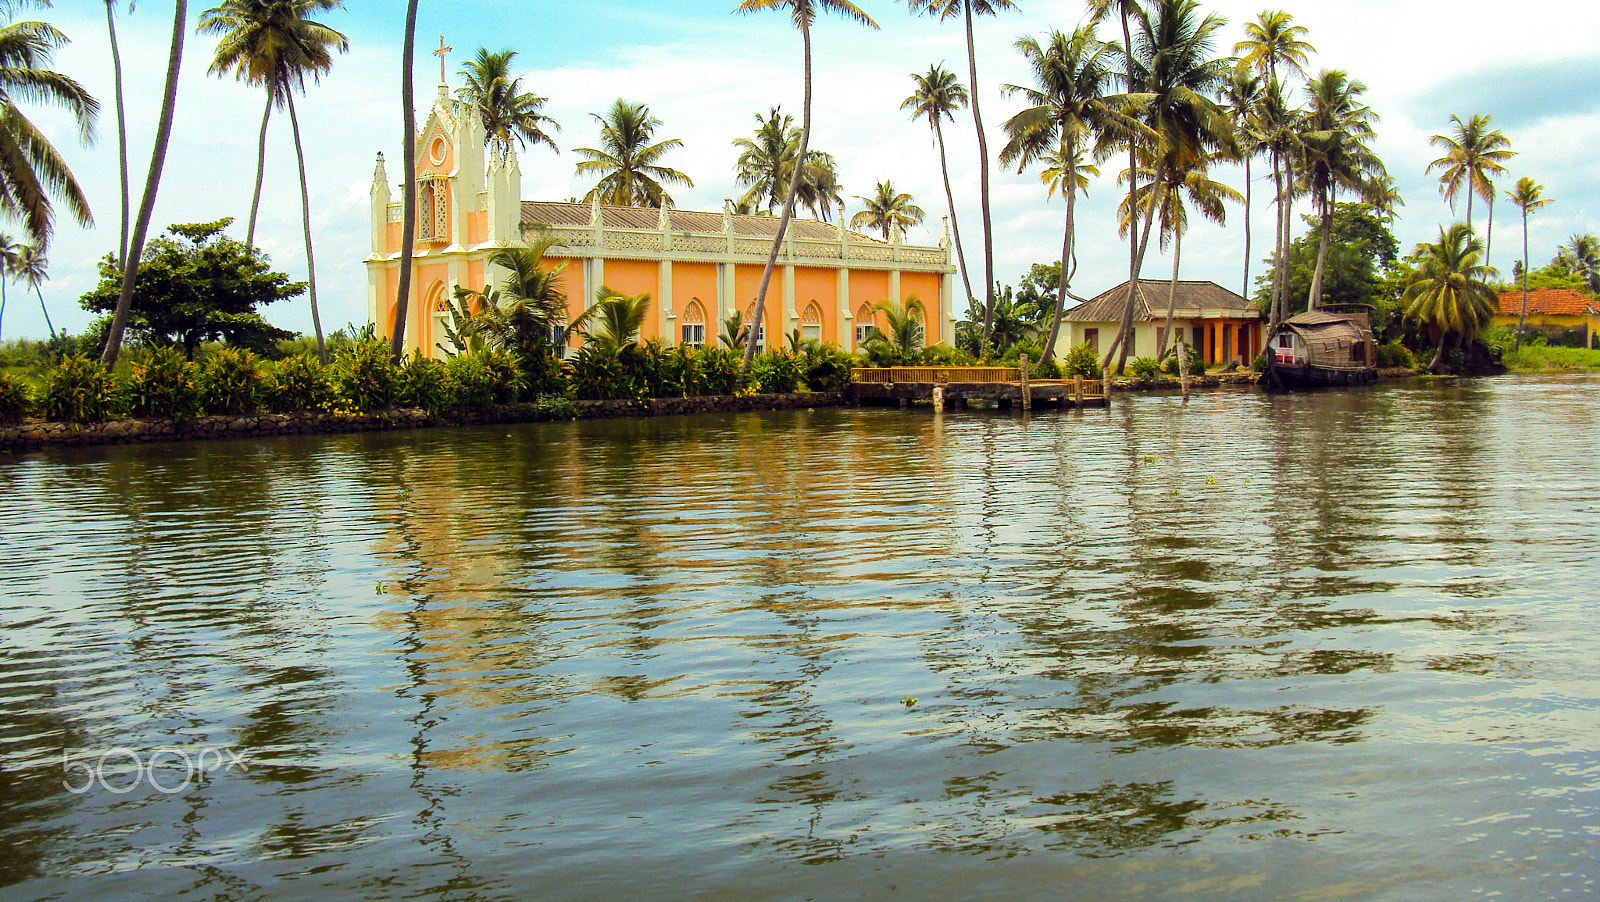 Sony DSC-W180 sample photo. Kerala church in alleppy photography